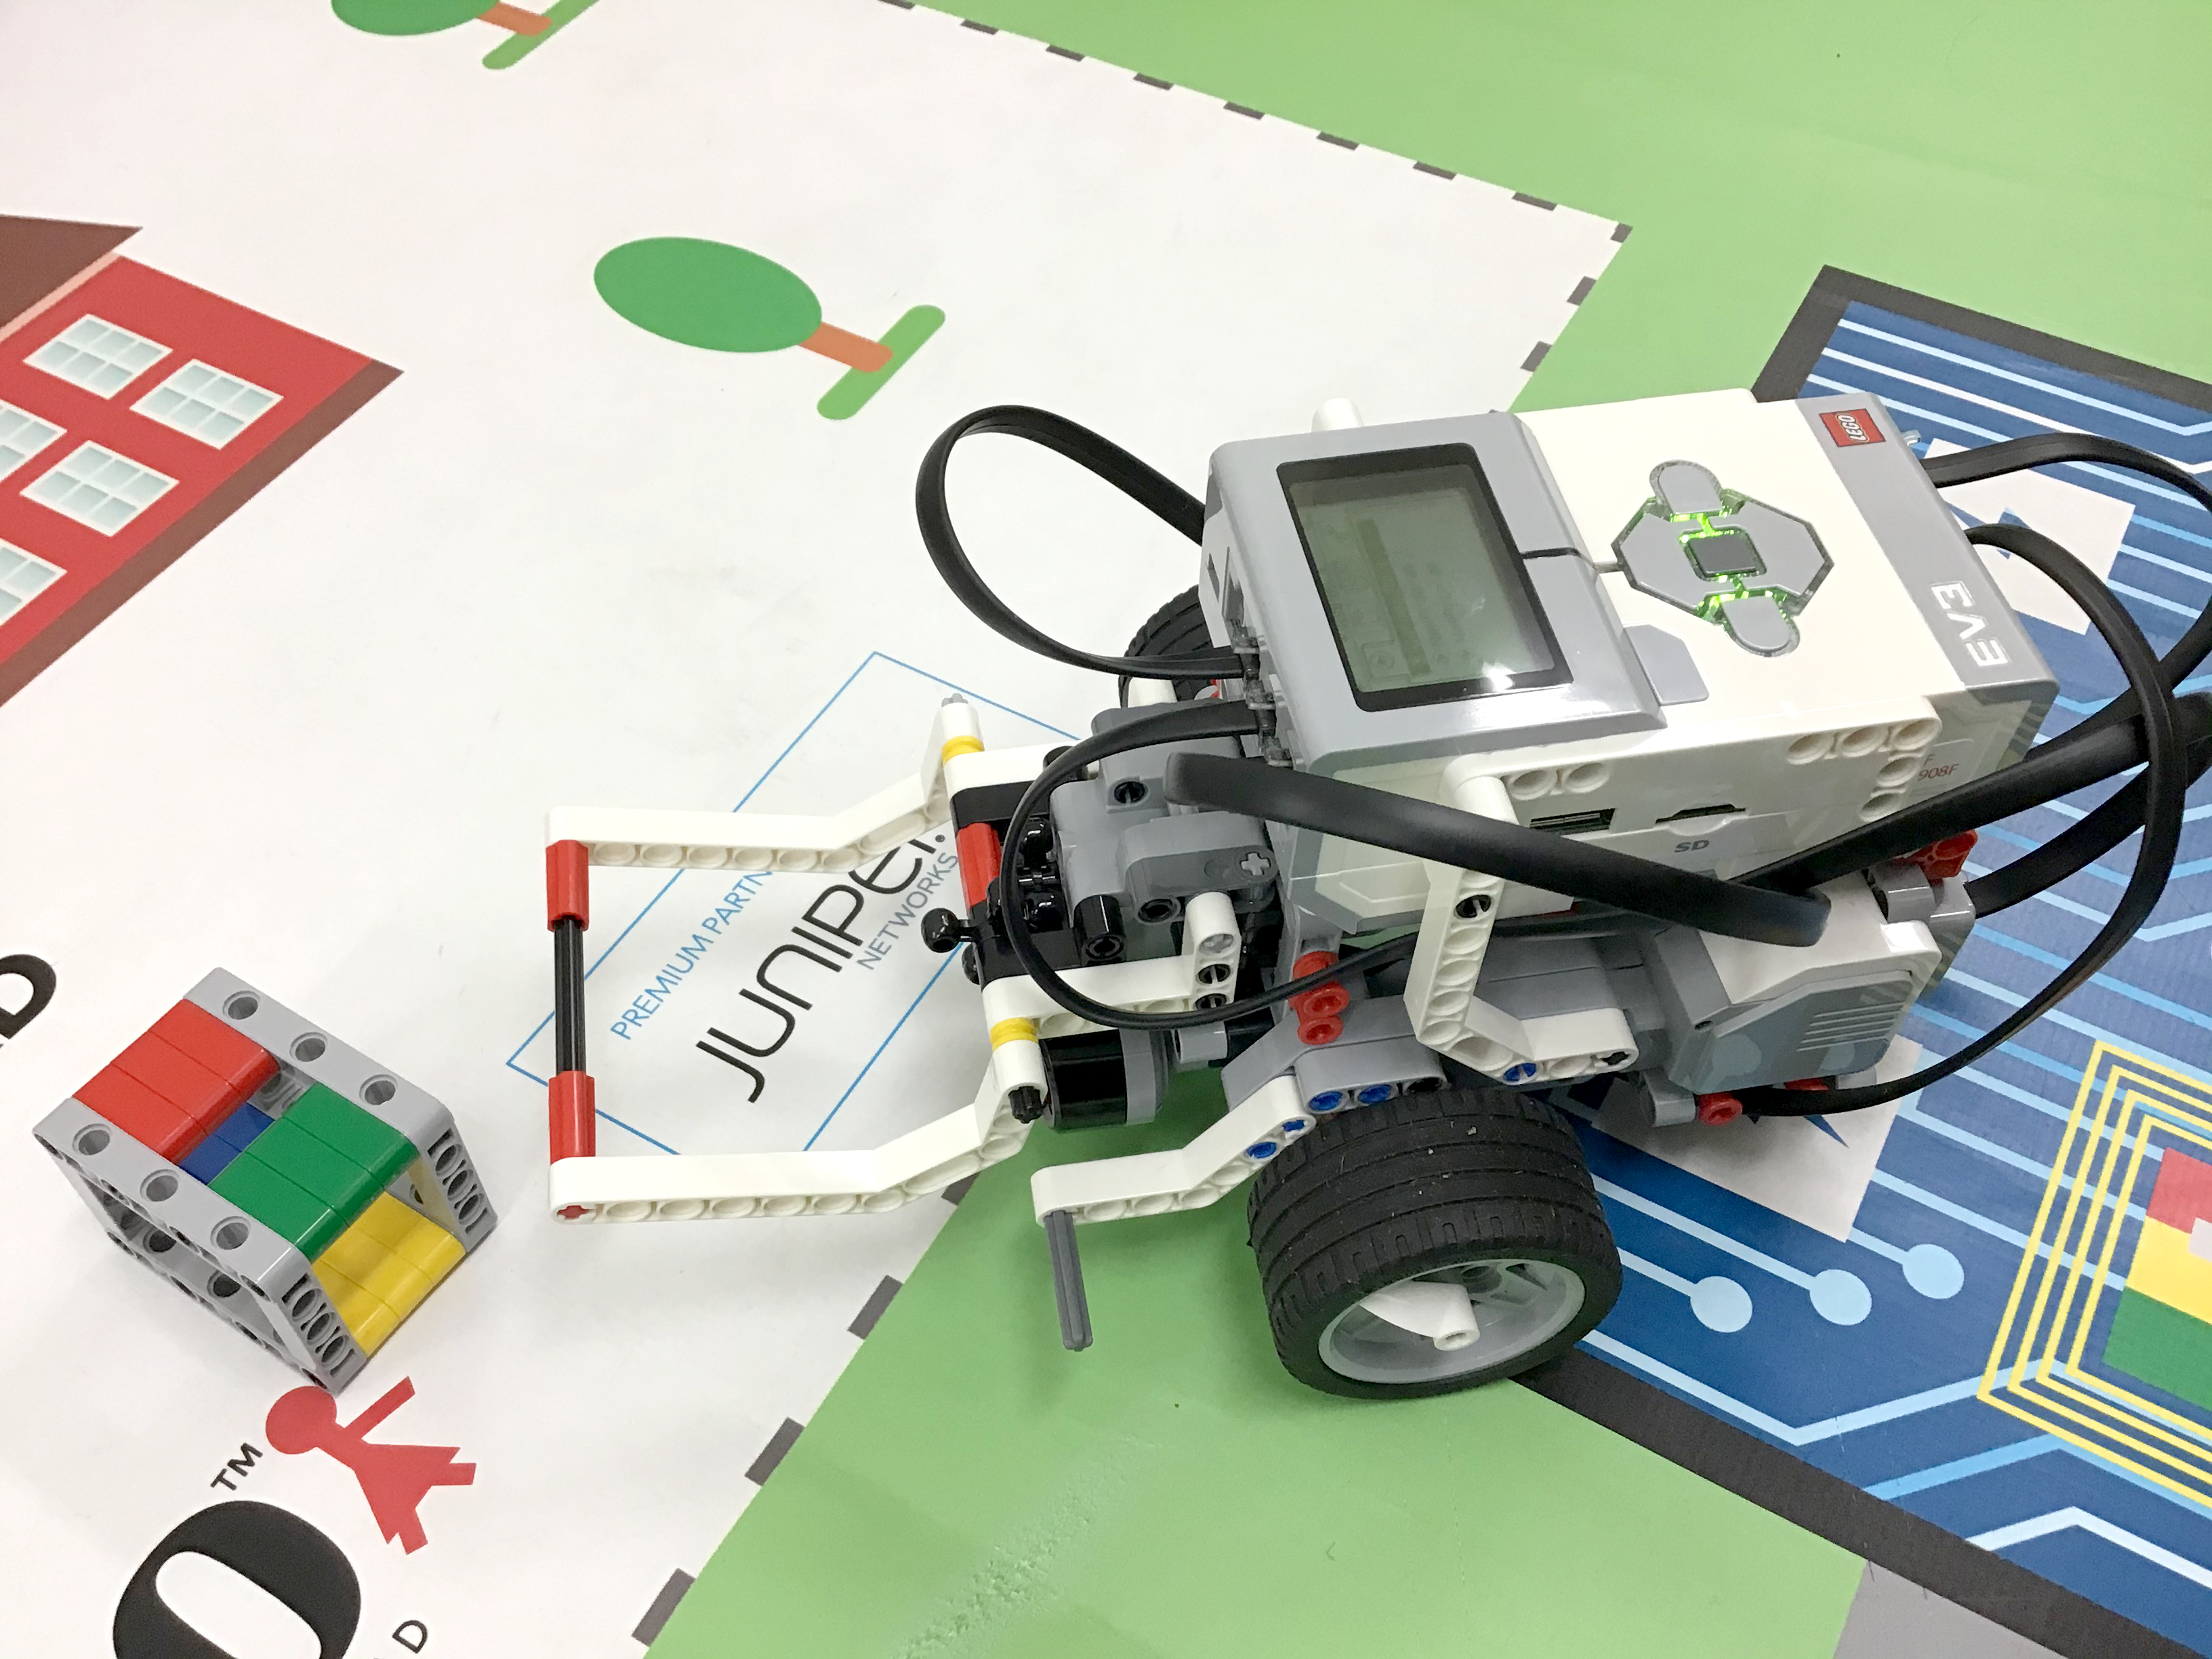 格安中古 レゴ　プログラミング　ロボット教室　マインドストームEV3 テキスト設計図USB 知育玩具